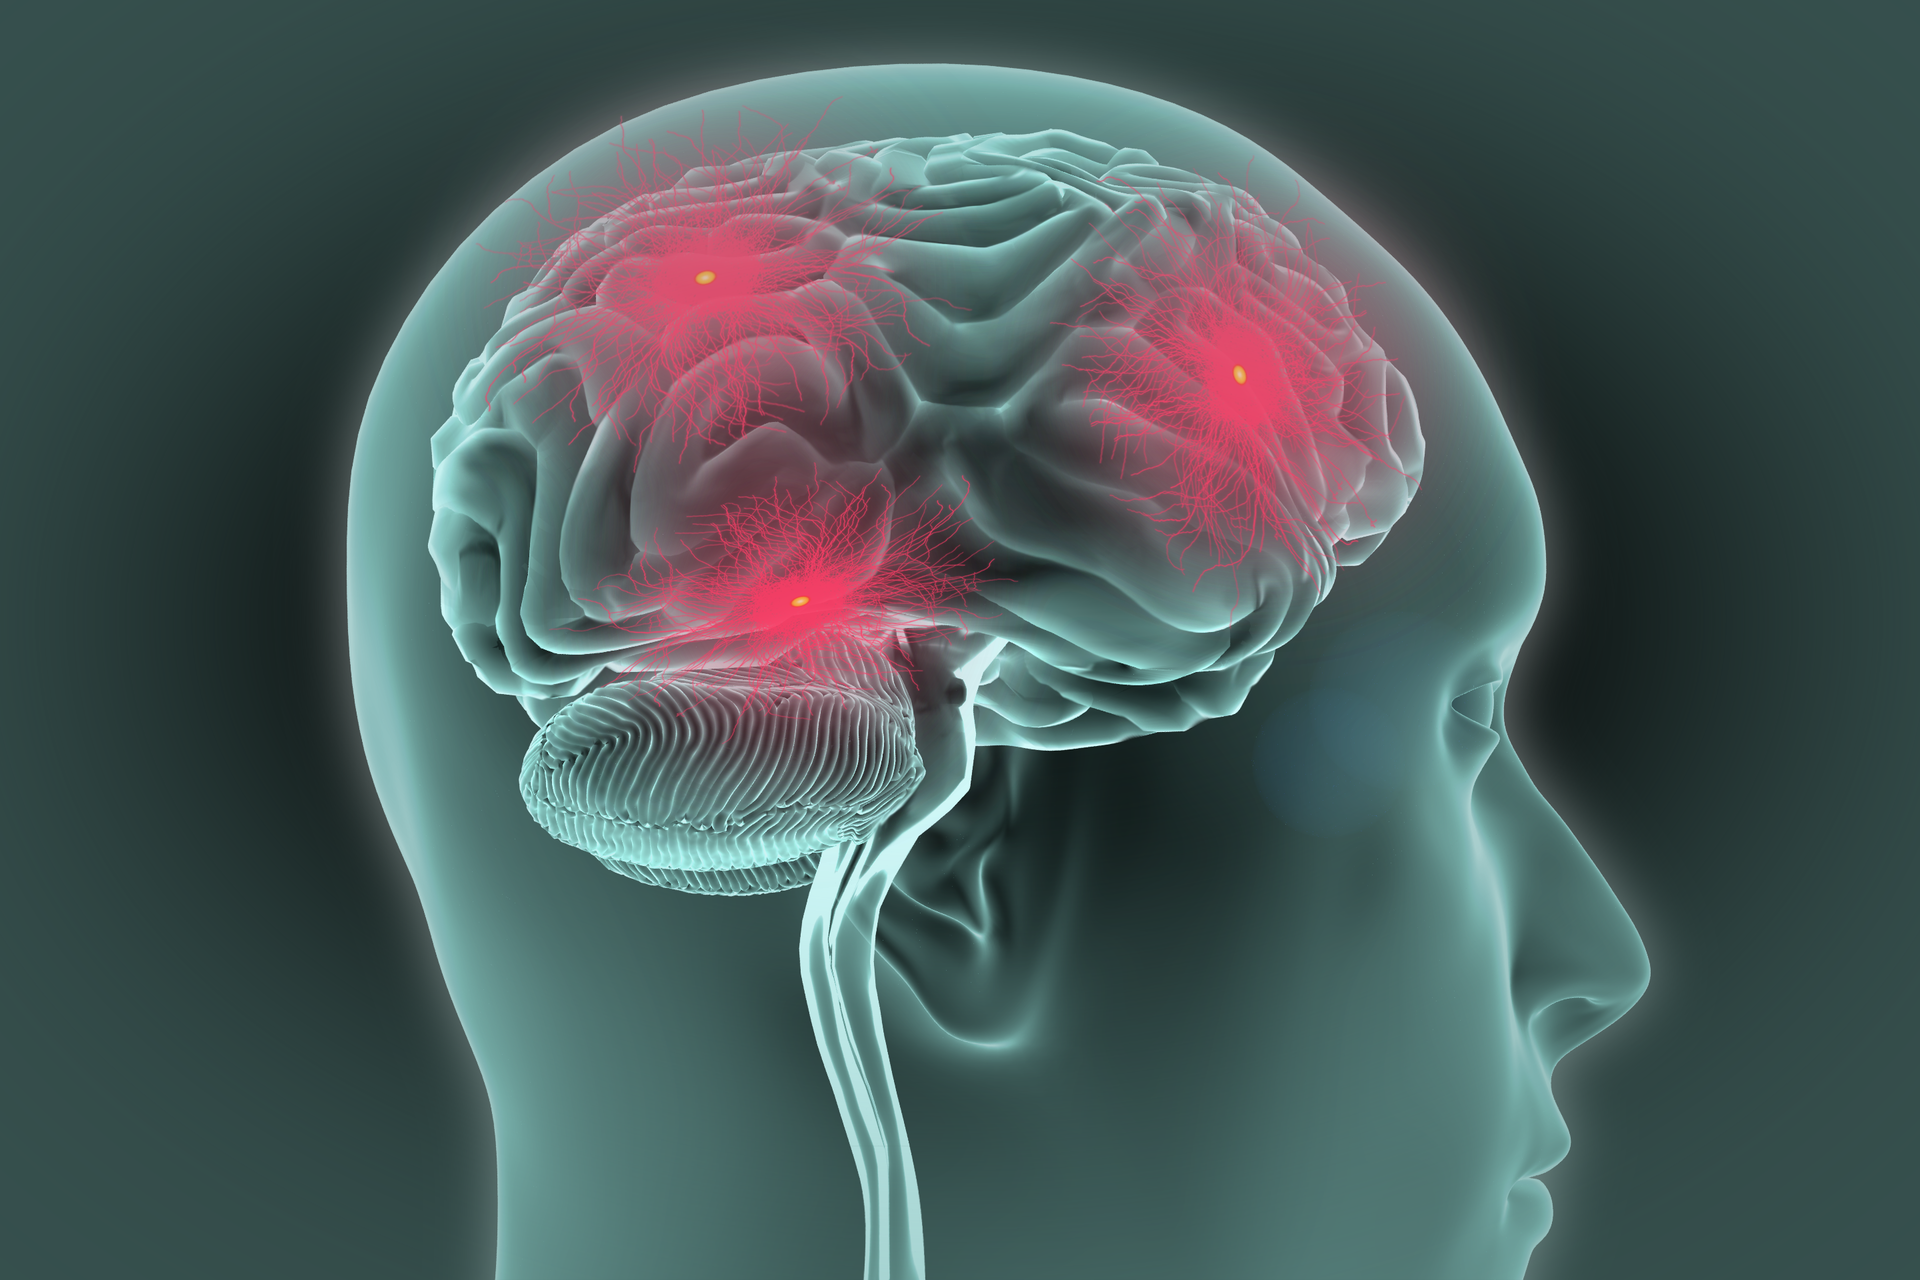 Grafika komputerowa przedstawia ludzką głowę z profilu i naniesiony na nią obraz mózgu. Twarz postaci jest skierowana w prawo. Na powierzchni mózgu można zauważyć liczne pofałdowania, znacznie liczniejsze i drobniejsze w tylnej dolnej części, czyli tak zwanym móżdżku. Na powierzchni mózgu znajdują się trzy czerwone punkty wskazujące miejsca wyładowań elektrycznych w komórkach nerwowych. Miejsca te przypominają wierzchołki trójkąta. Punkt po prawej znajduje się w płacie czołowym. Punkt drugi mieści się nad uchem. Trzeci punkt usytuowano w górnej części mózgu.